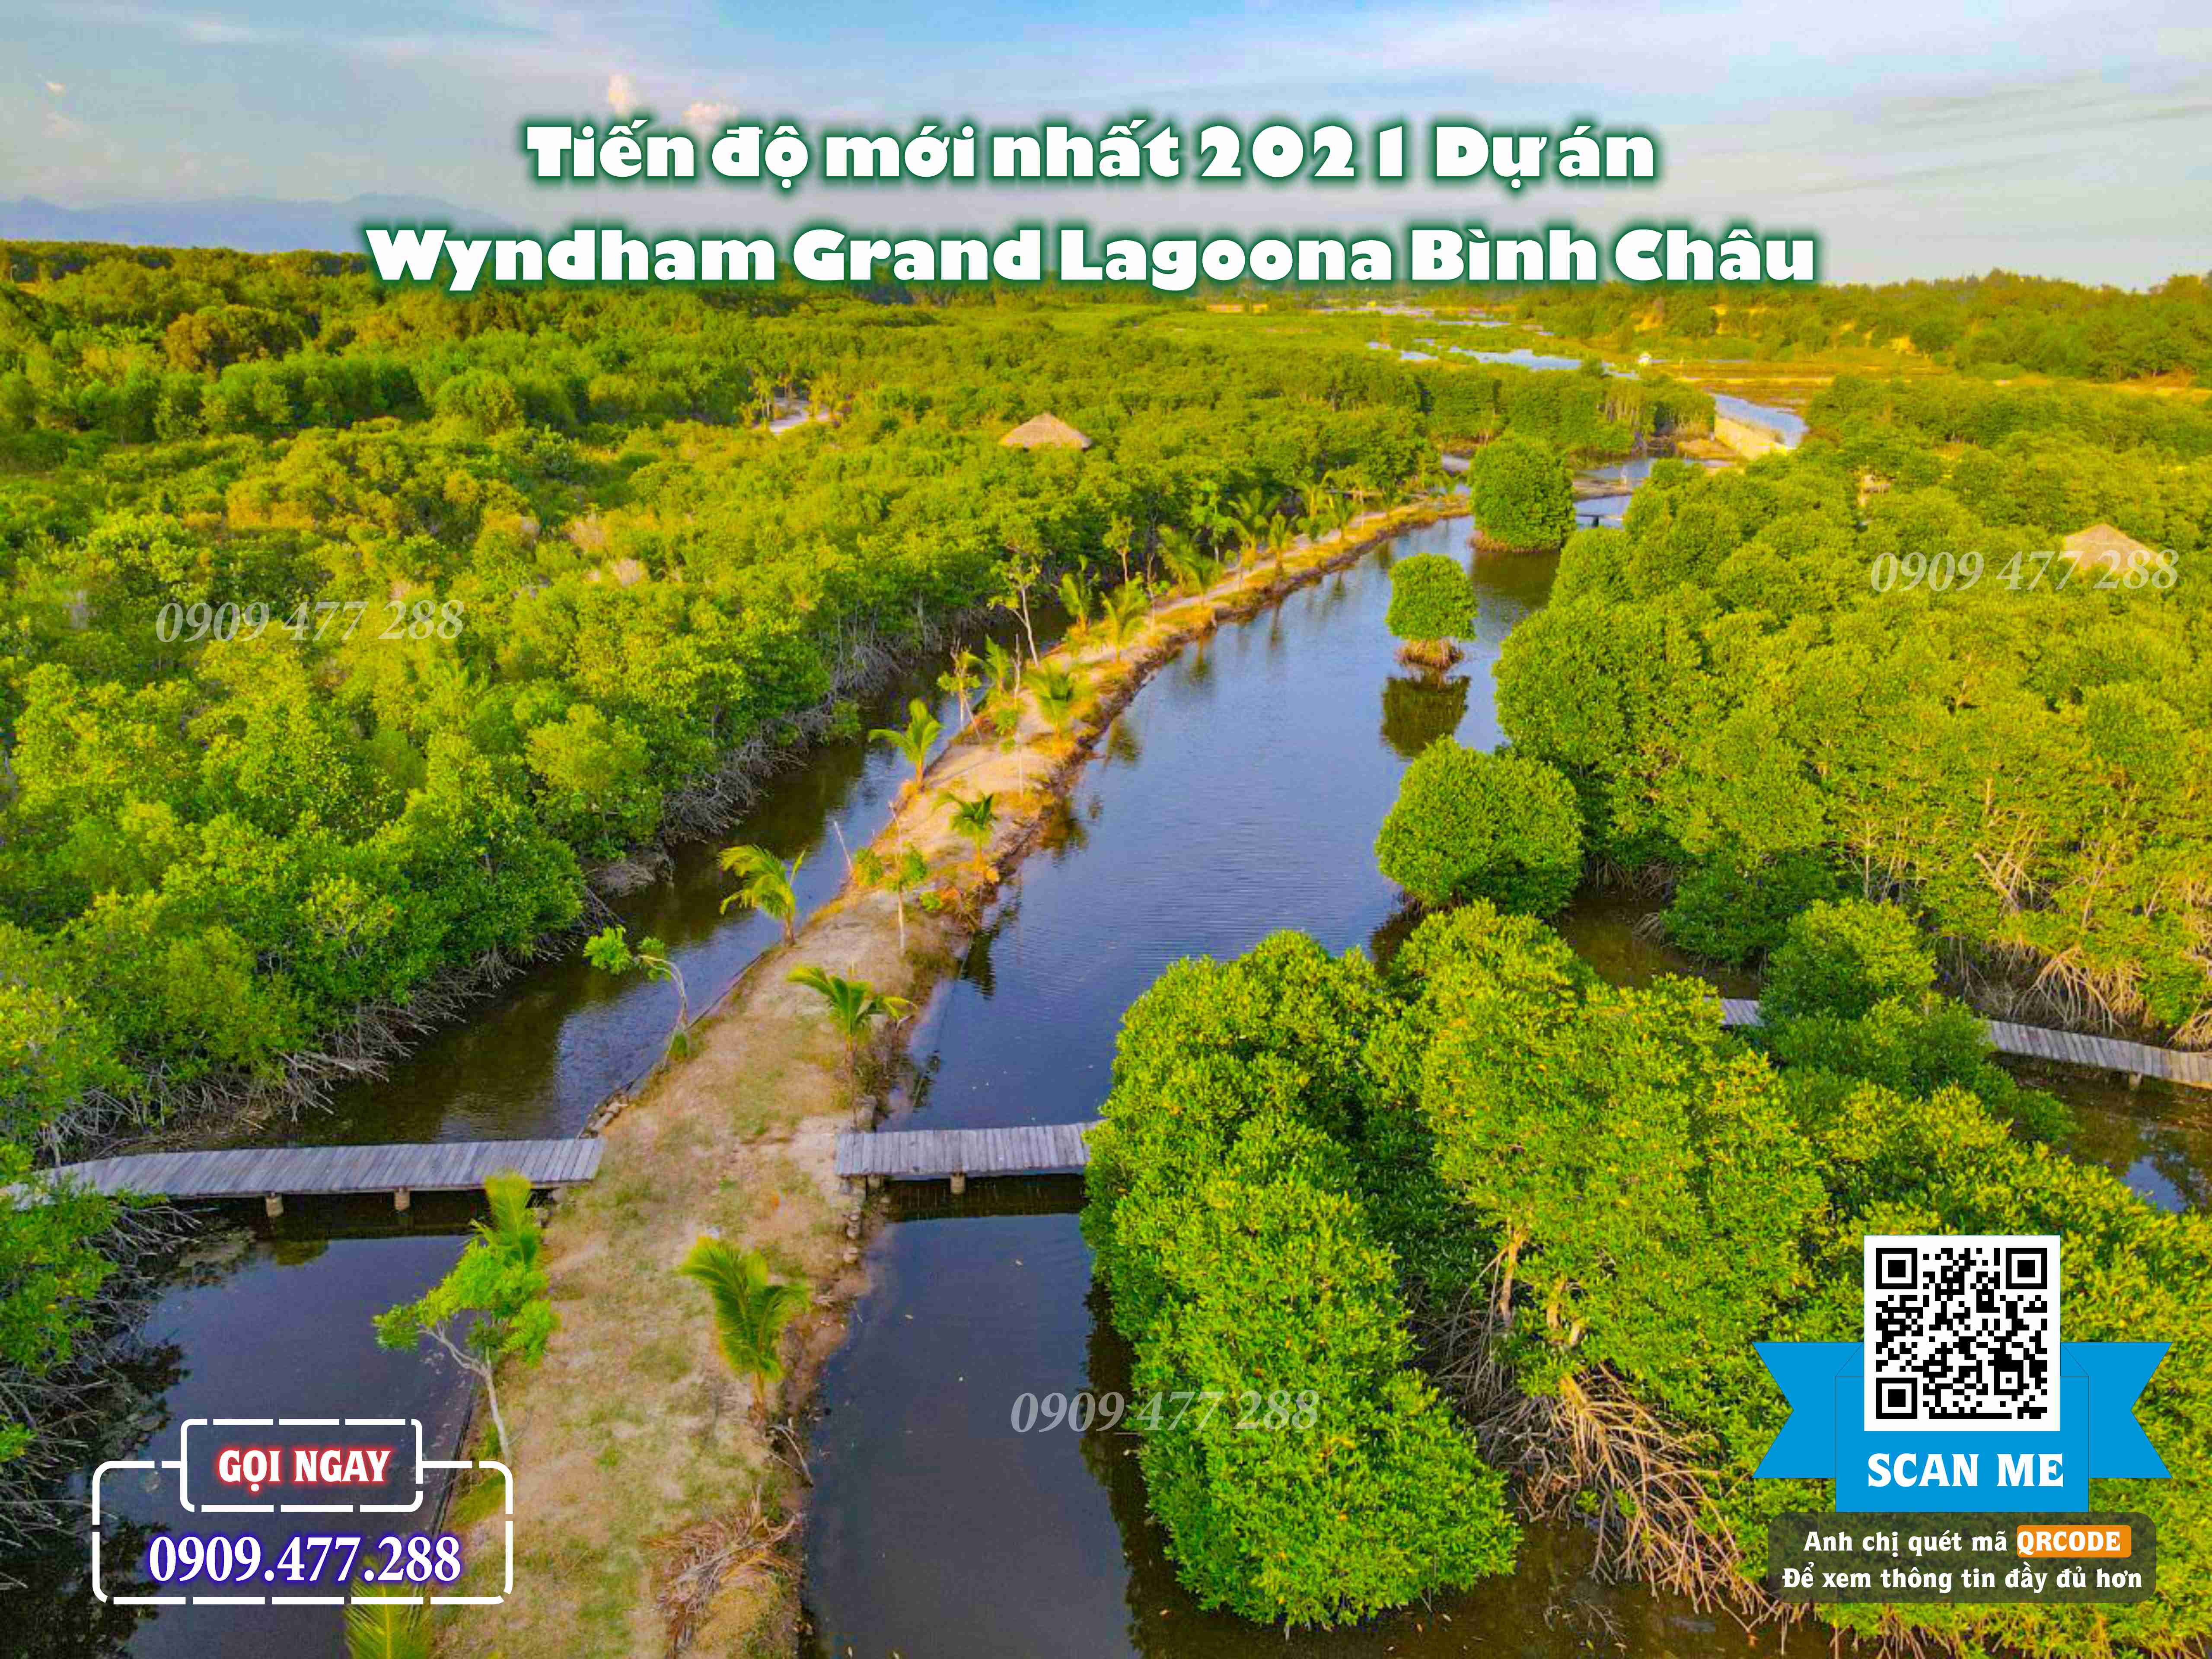 Wyndham Grand Lagoona Bình Châu (16)